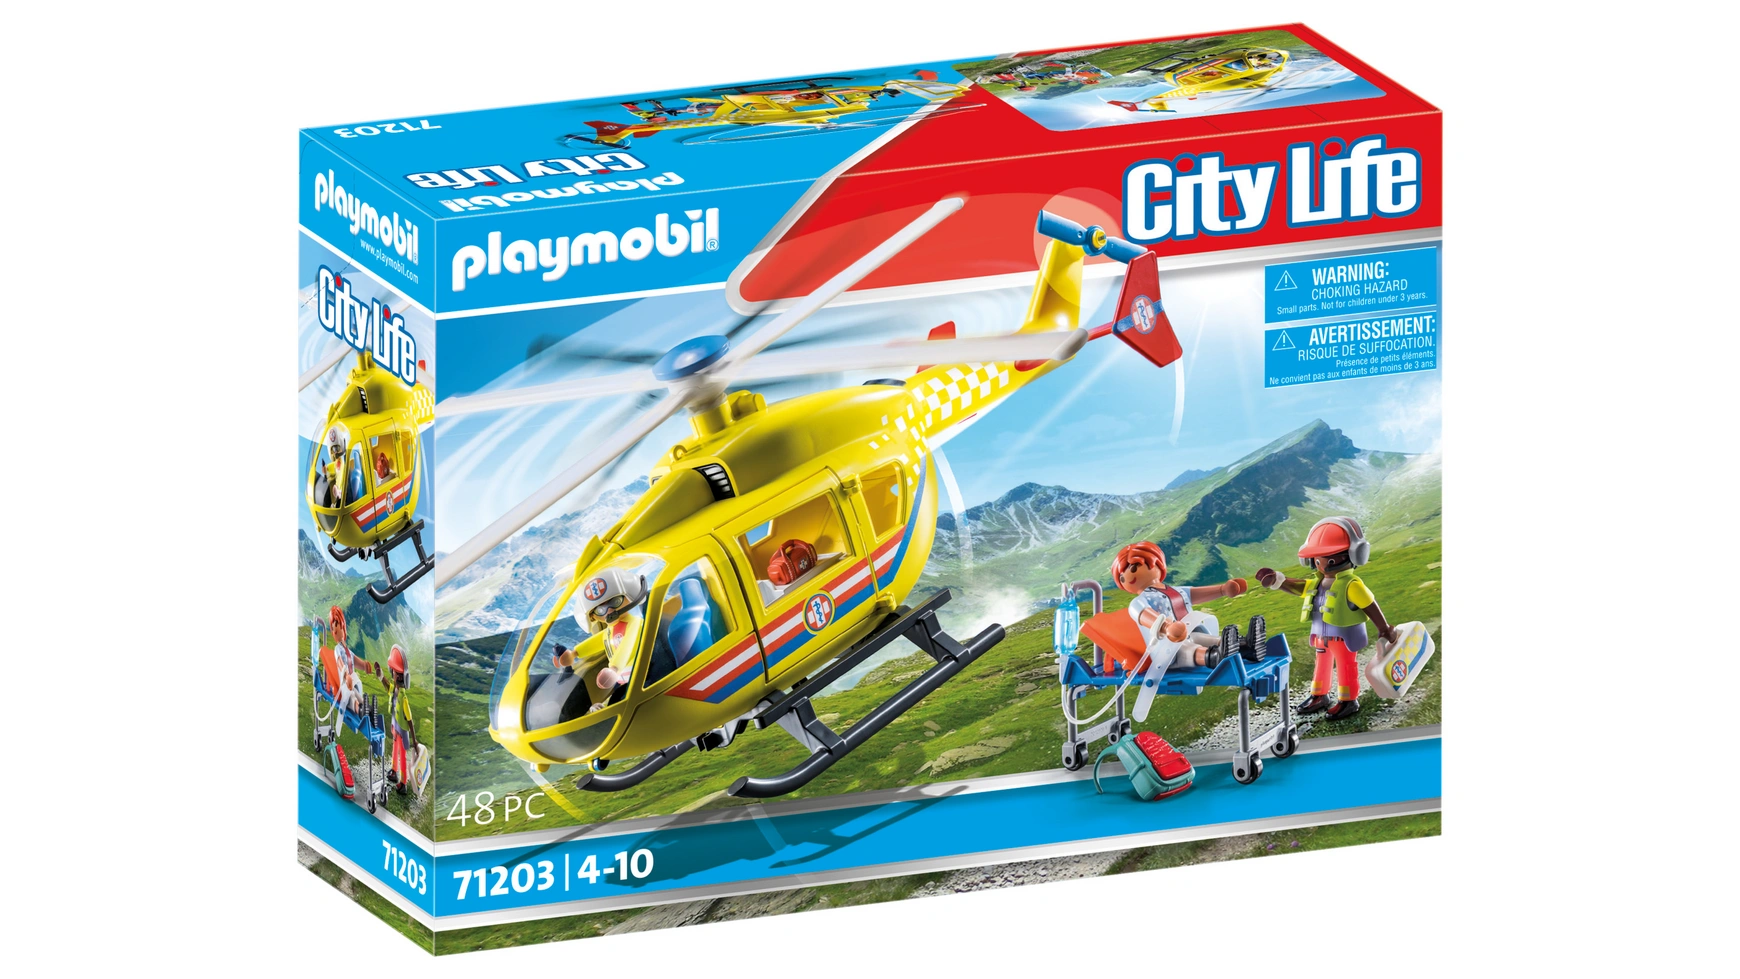 Городская жизнь спасательный вертолет Playmobil бизиборд городская жизнь 4250831